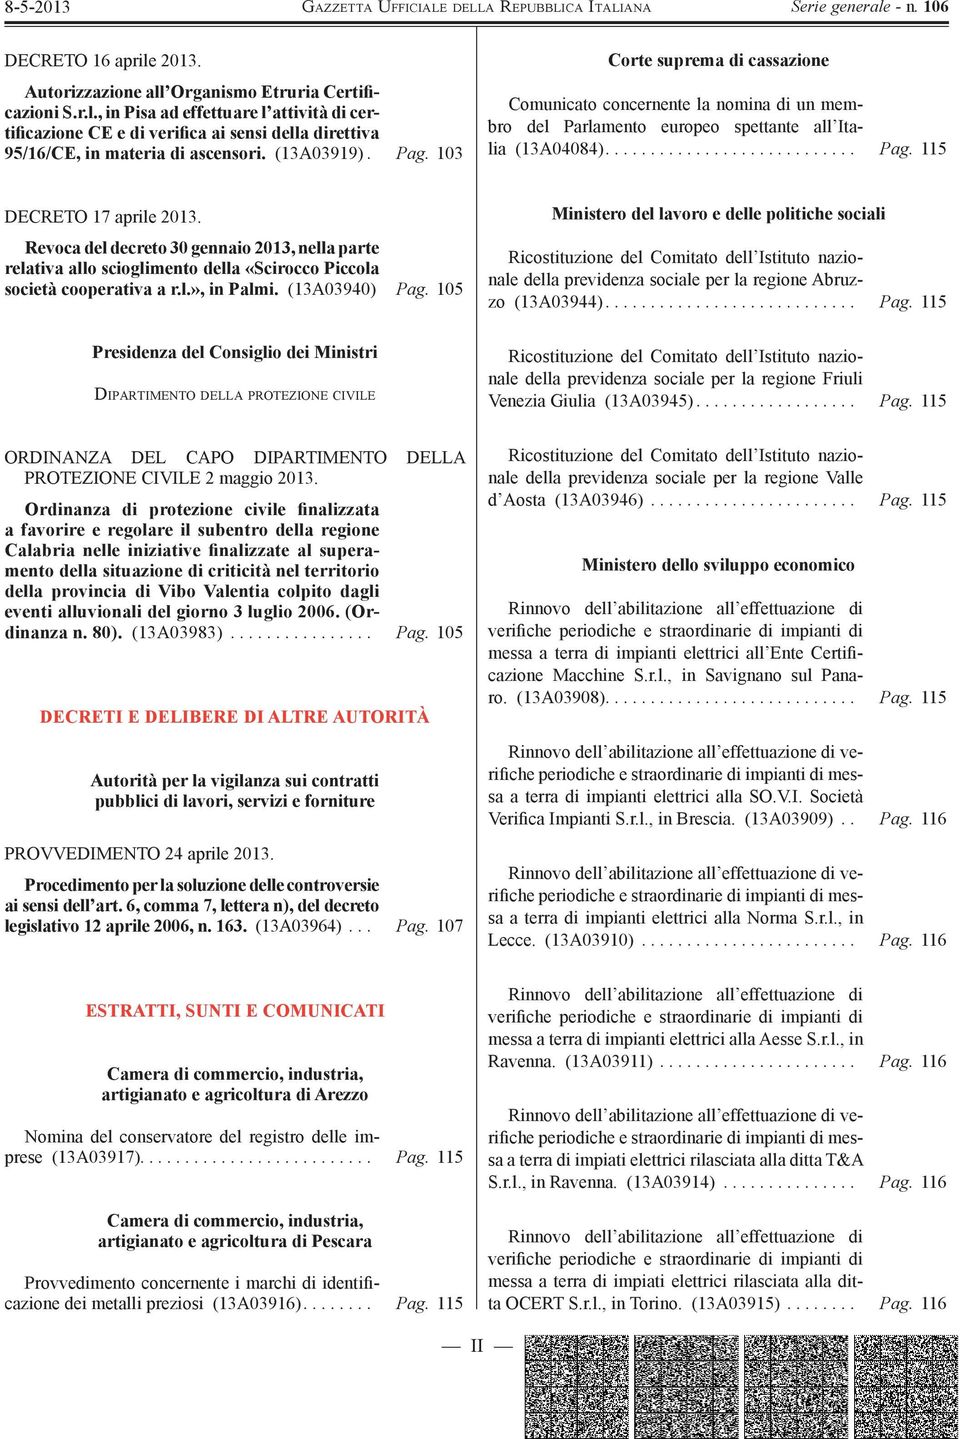 Revoca del decreto 30 gennaio 2013, nella parte relativa allo scioglimento della «Scirocco Piccola società cooperativa a r.l.», in Palmi. (13A03940) Pag.